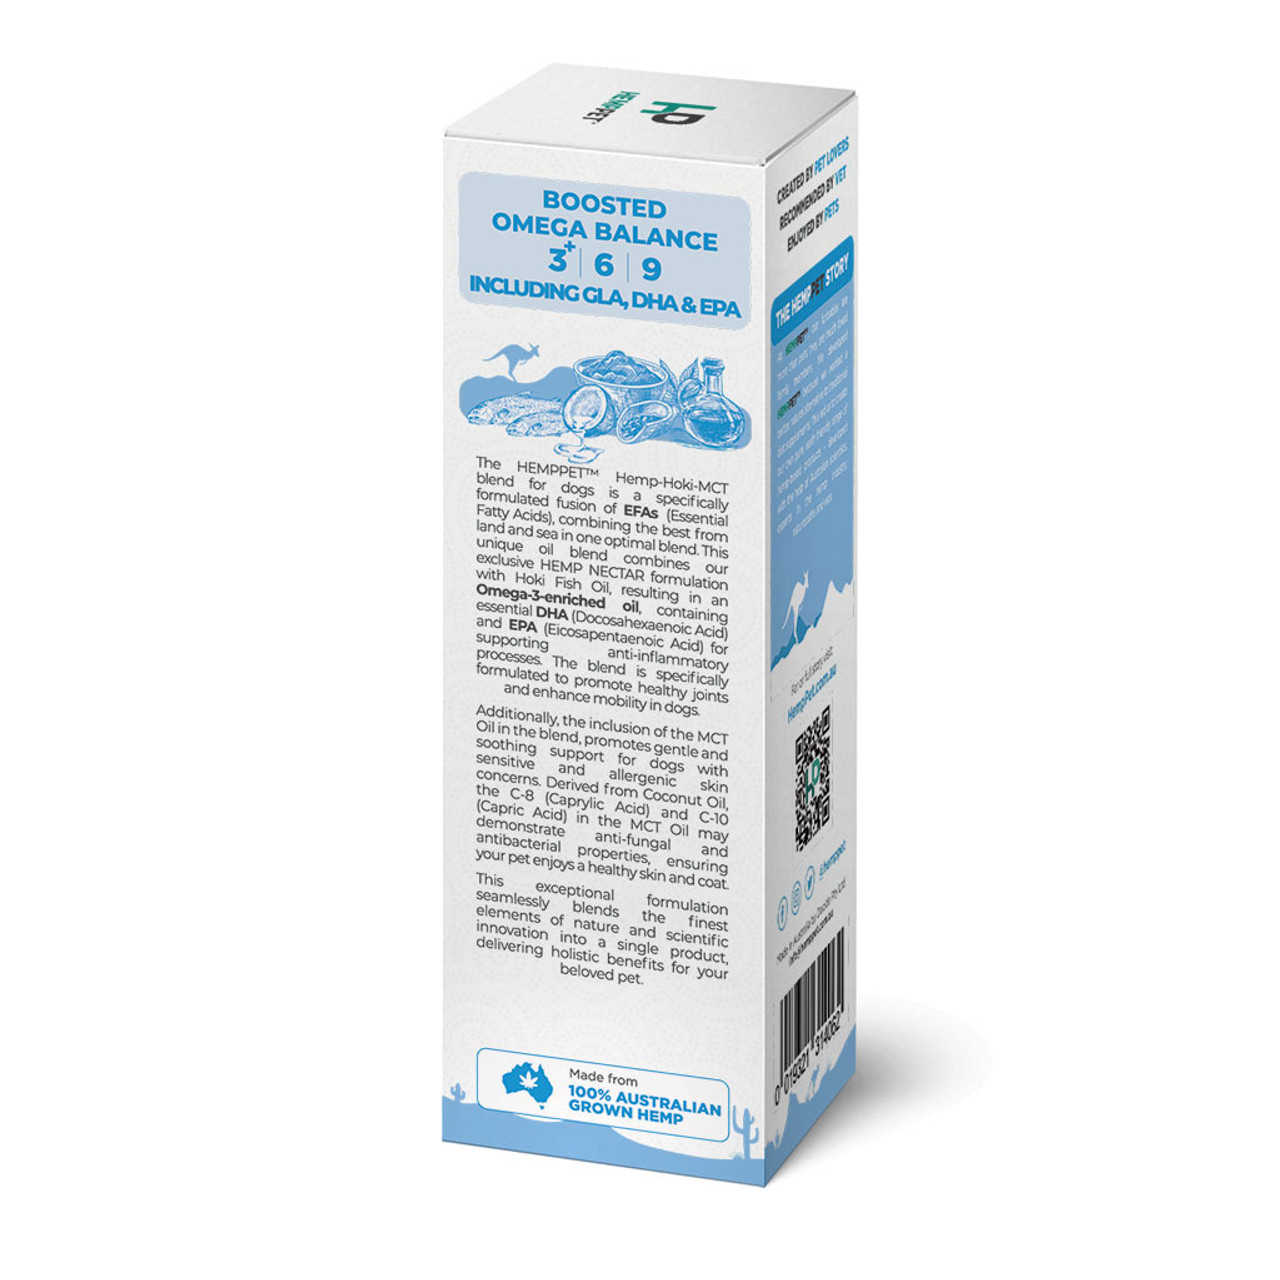 HempPet Mobility Supplement Hanfsamen-Nektar-Ölmischung + Hoki Fisch & MCT-Öl für Hunde 100ml (3.38 fl oz)